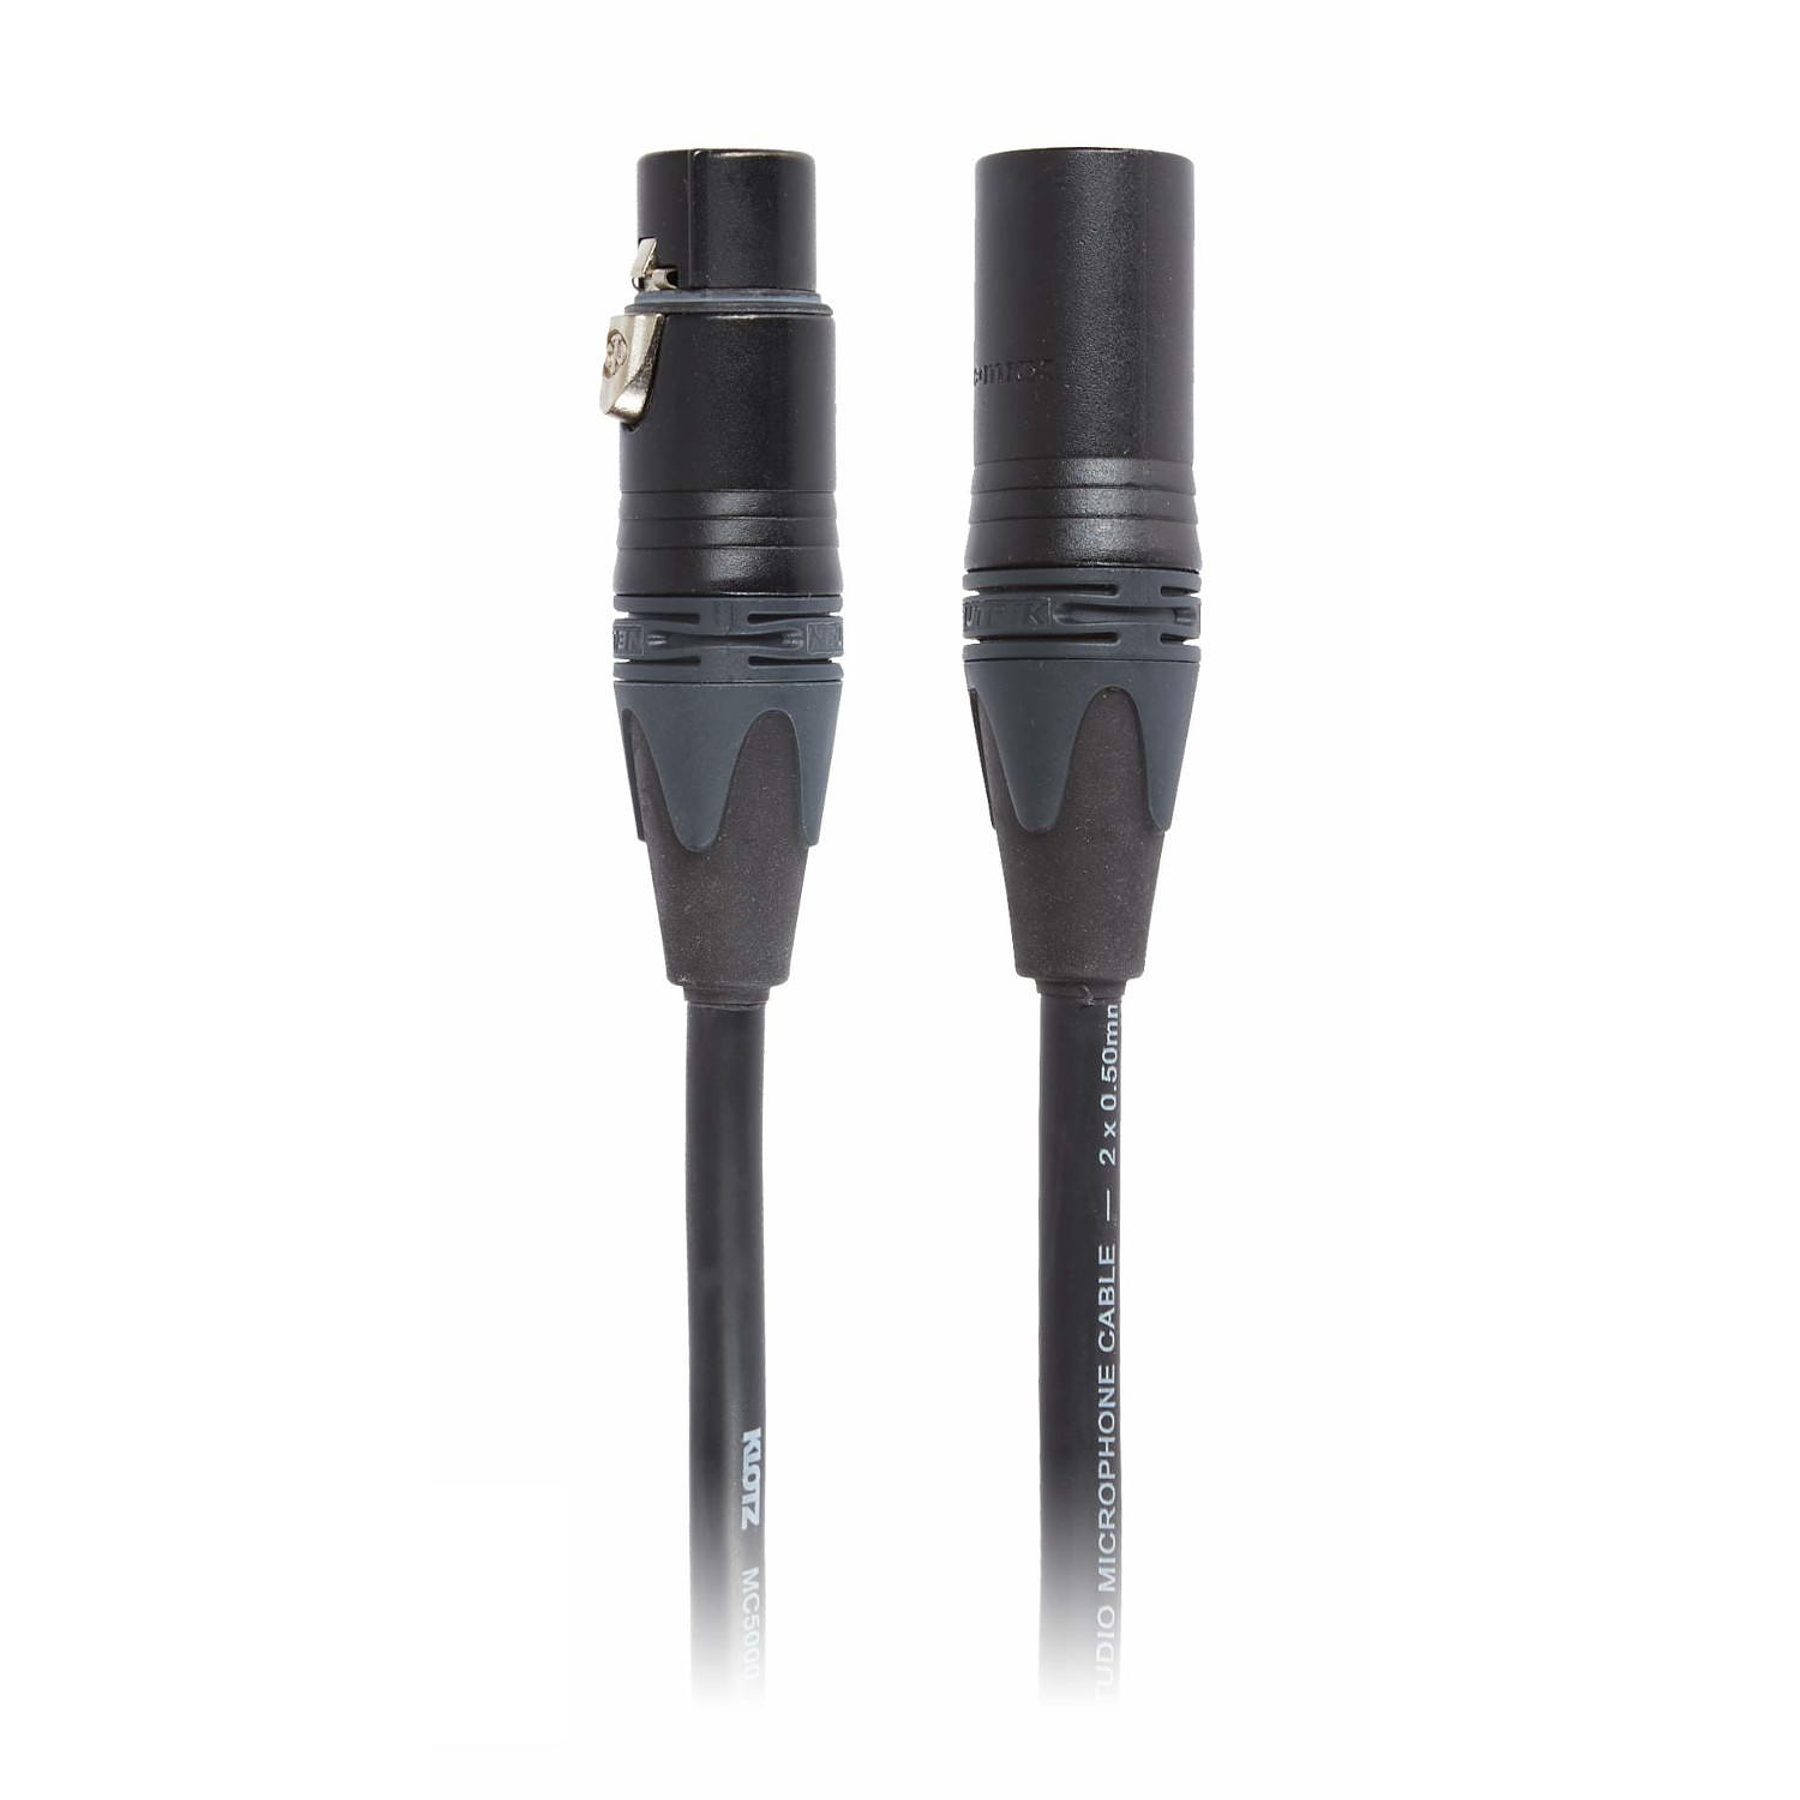 Cable Microfono XLR 15 metros Klotz M2FM1-1500